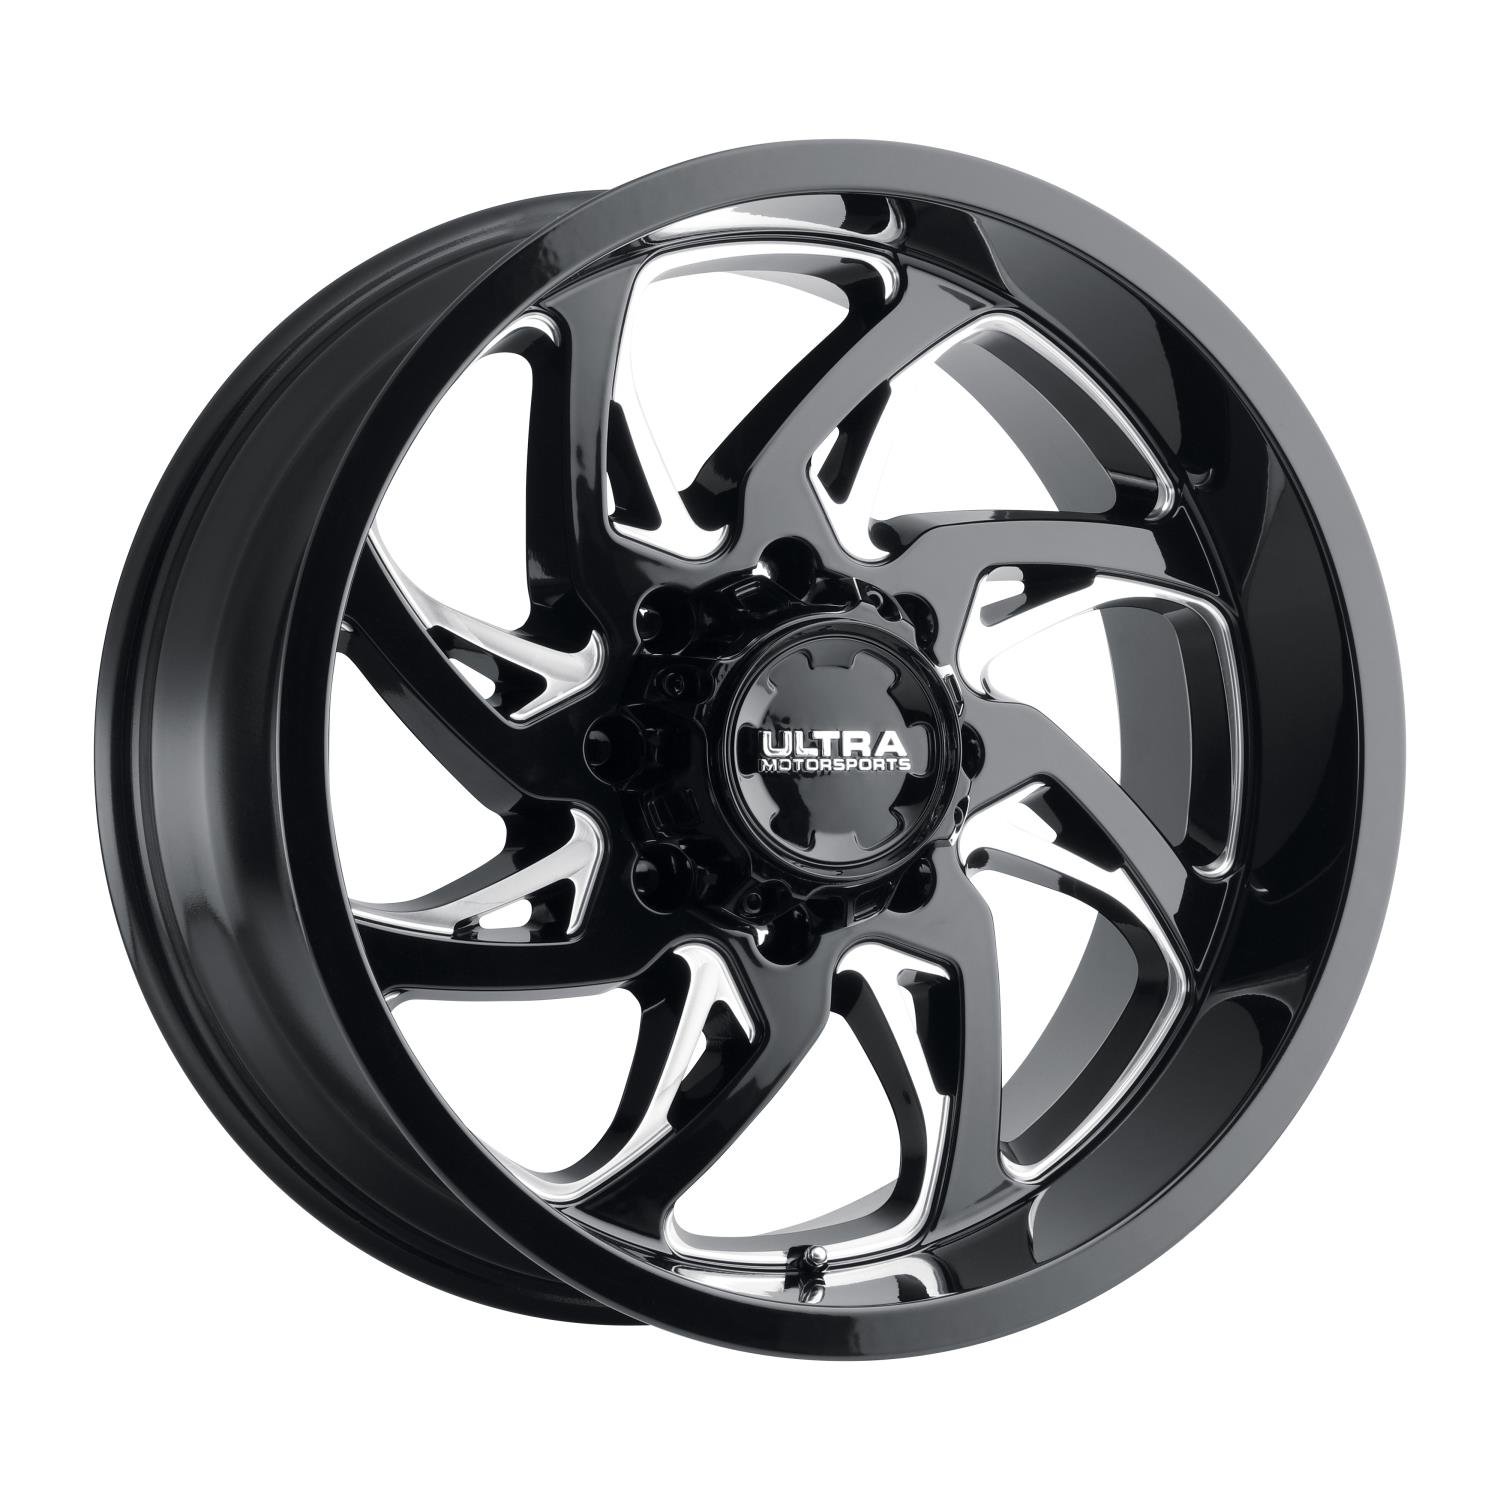 230-Series Villain Wheel, Size: 20x9", Bolt Pattern: 6x5.5"/6x135 mm [Gloss Black w/Milled Accents]